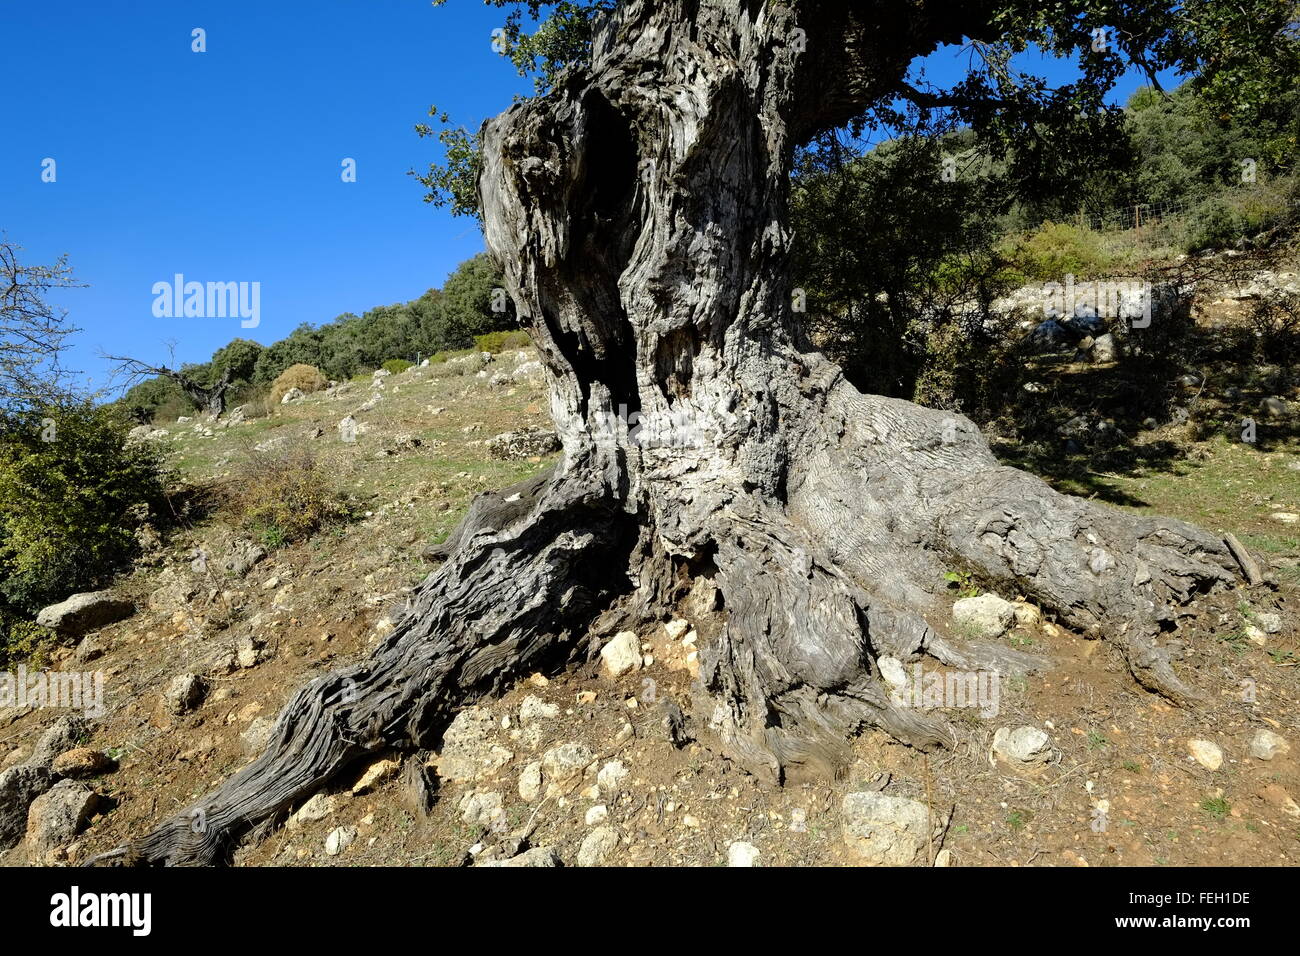 Sehr alte knorrige Holm Eiche Baum. Navazuelo, Provinz Cordoba, Andalusien. Spanien Stockfoto